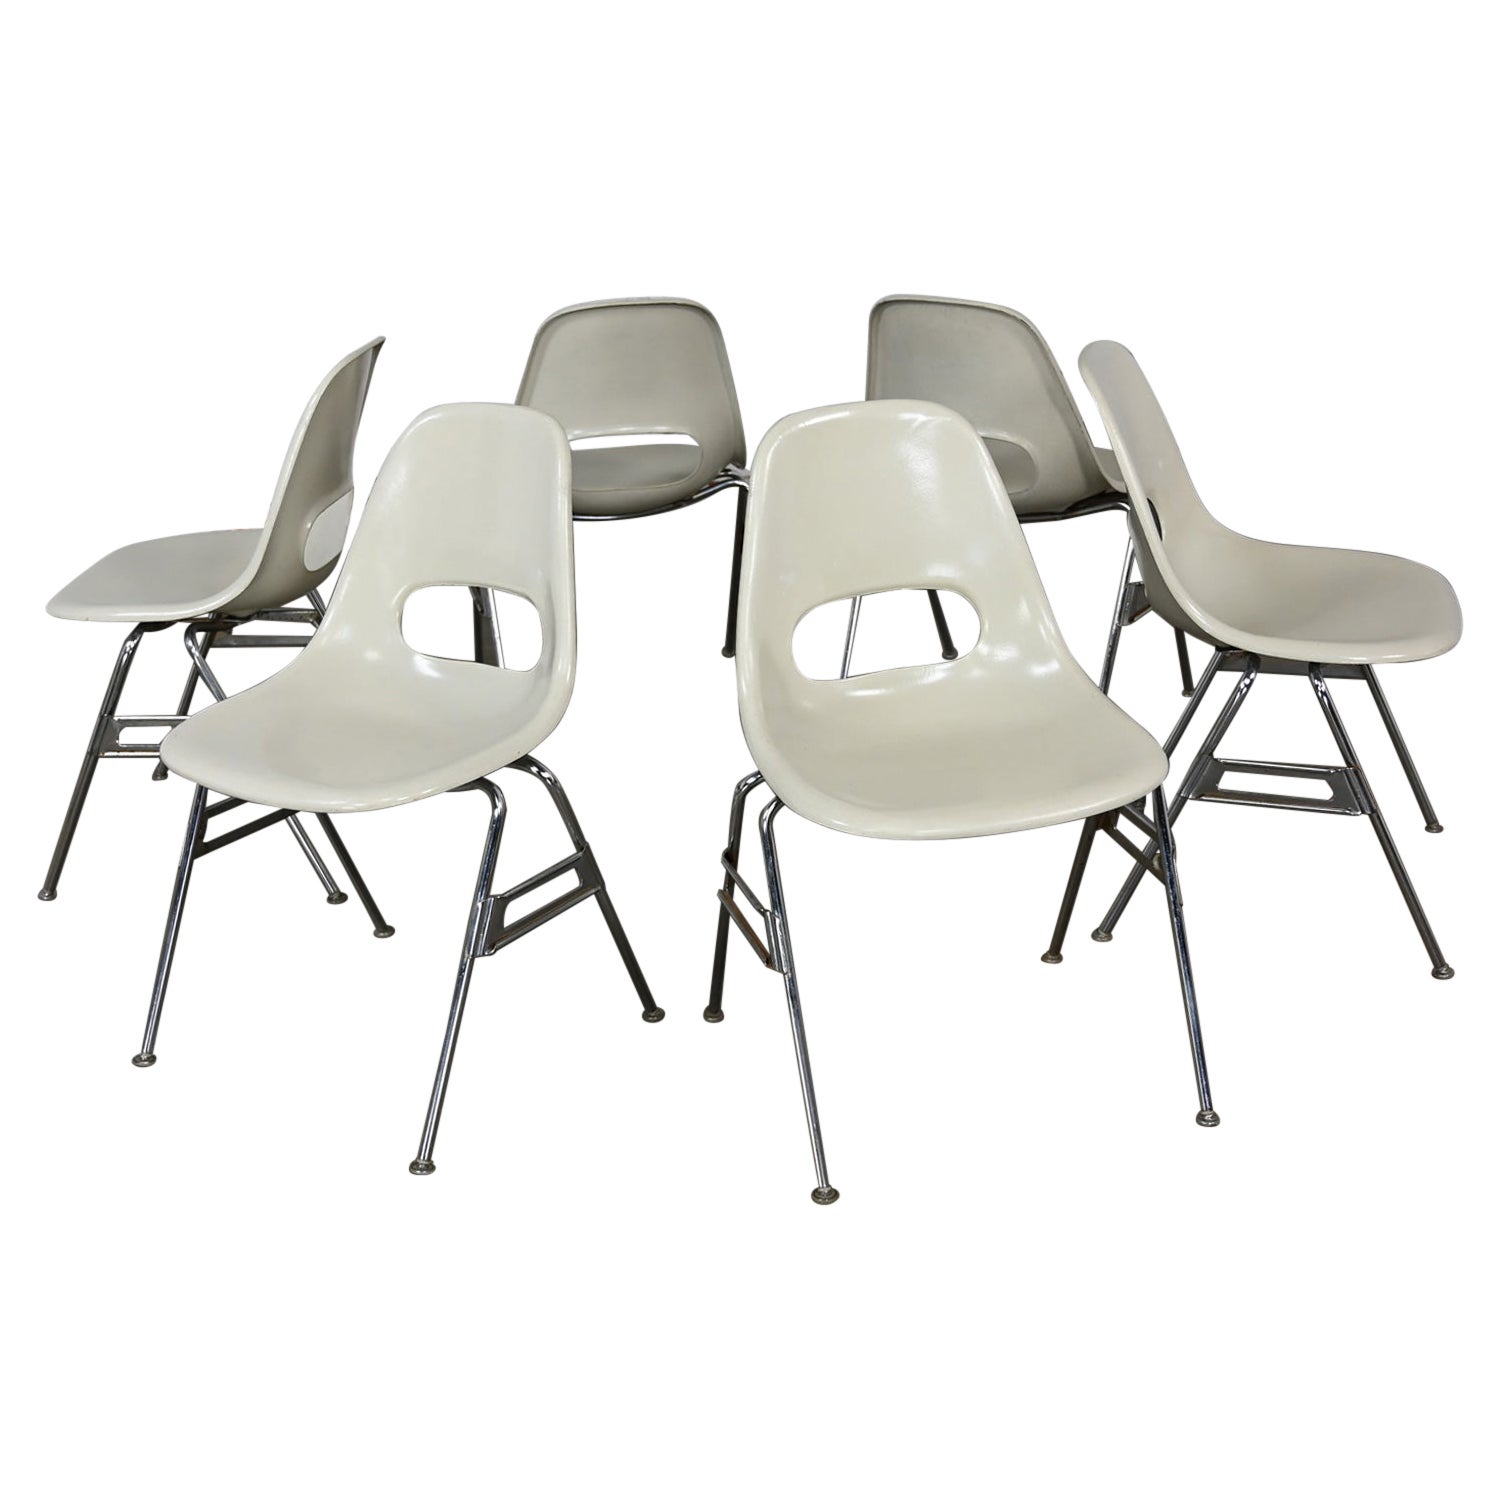 1960-70’s MCM Krueger International White Fiberglass & Chrome Stacking Chairs 6 For Sale